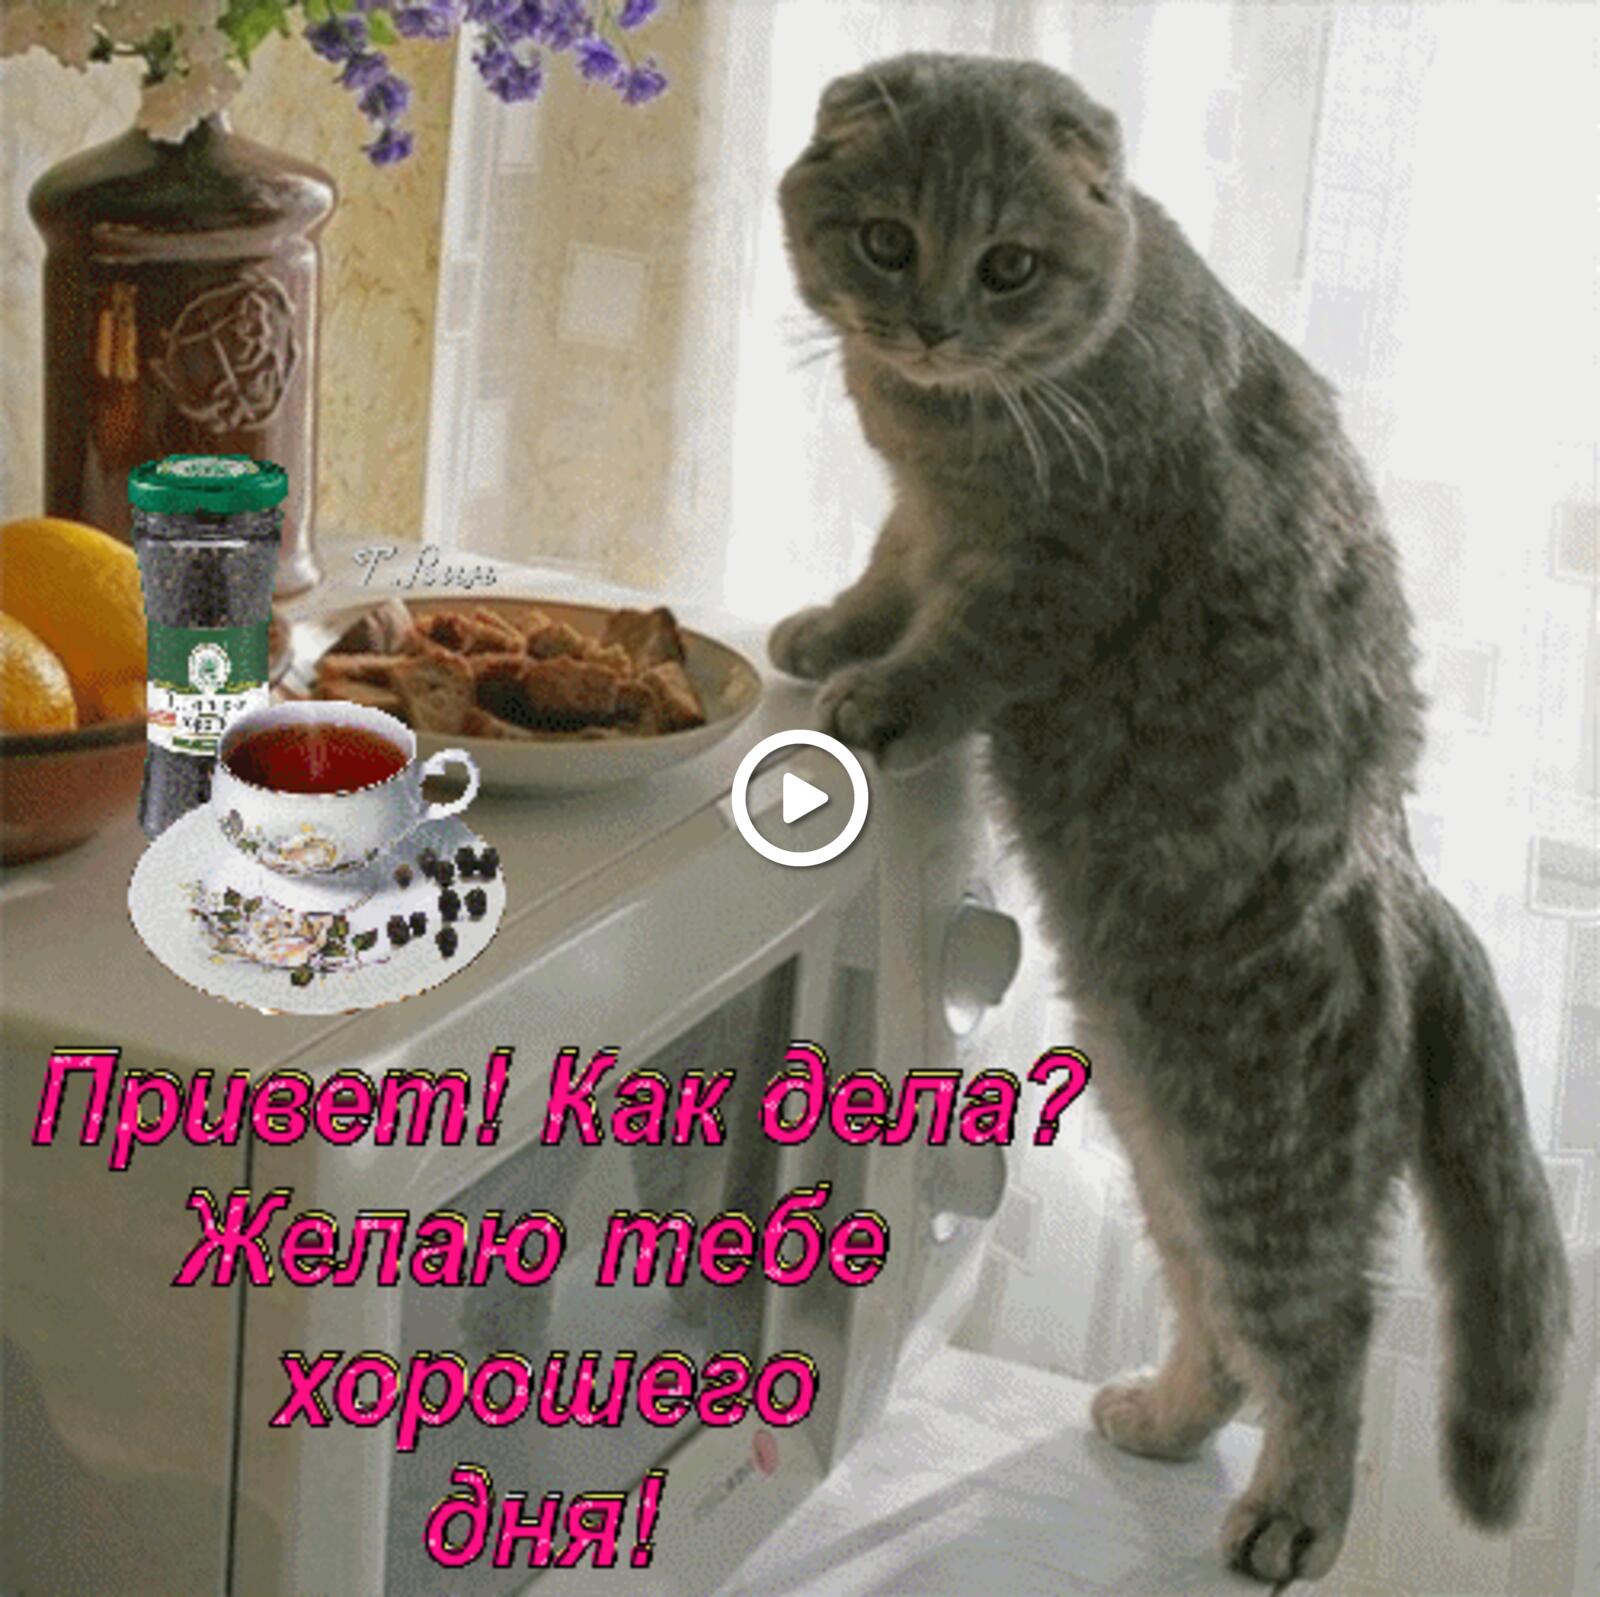 一张以饮品 晨愿 小猫为主题的明信片